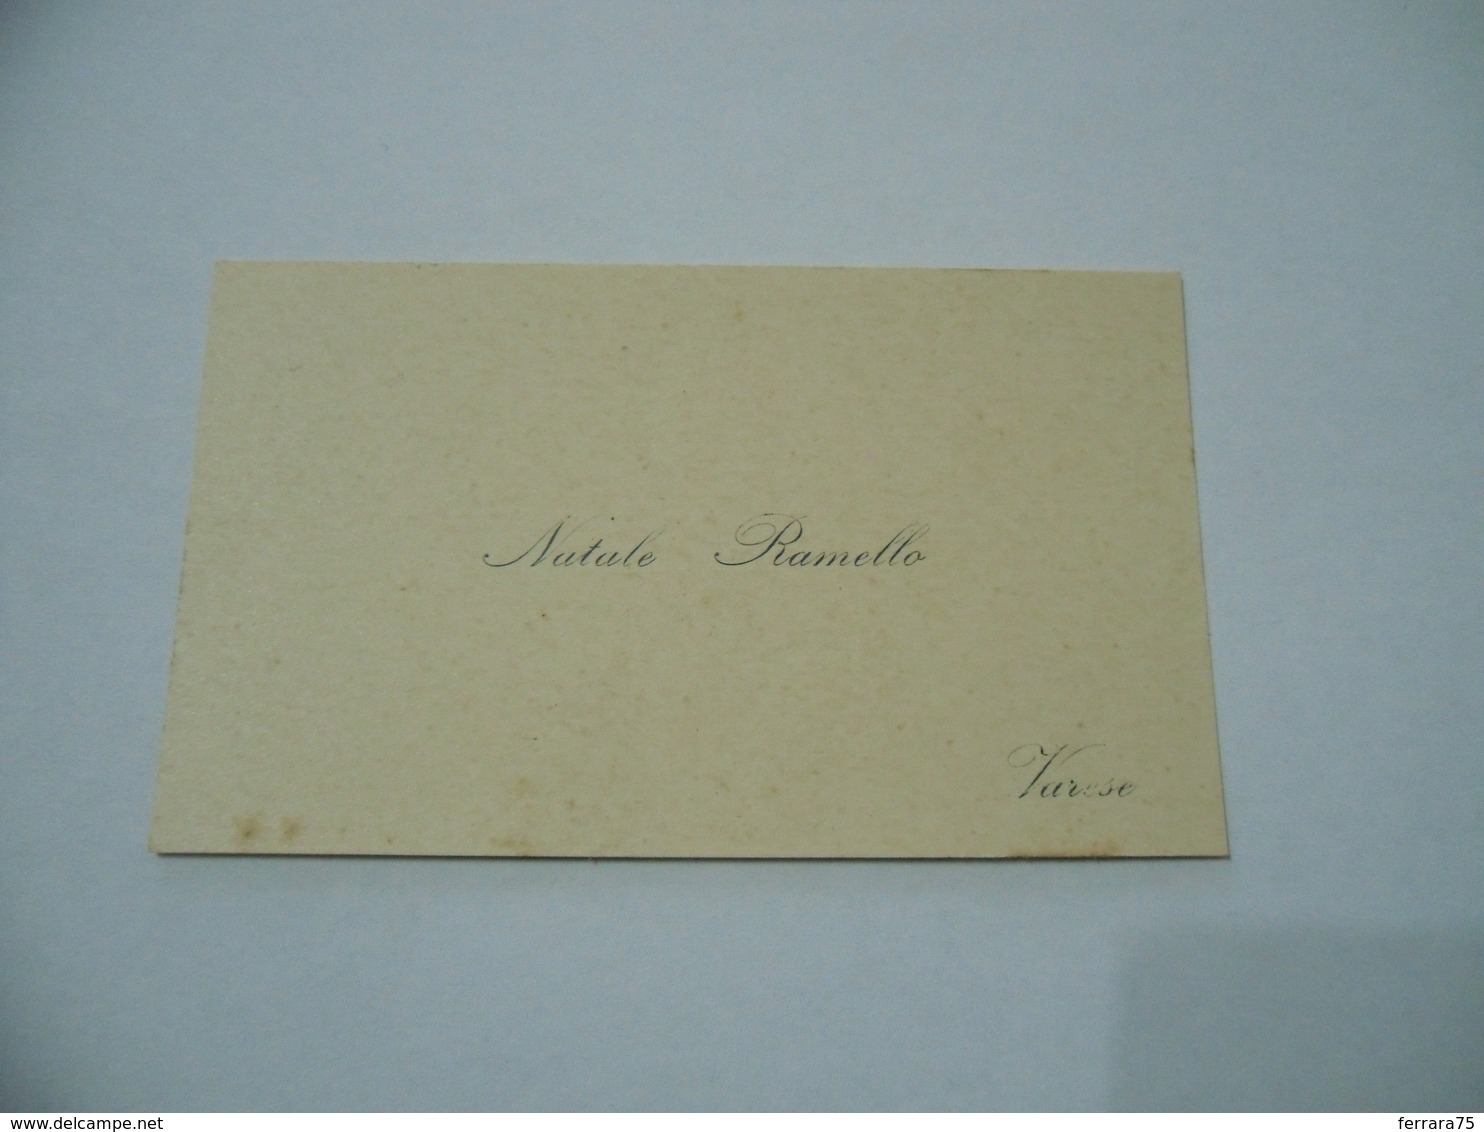 CARTONCINO BIGLIETTO DA VISITA NATALE RAMELLO VARESE - Visiting Cards